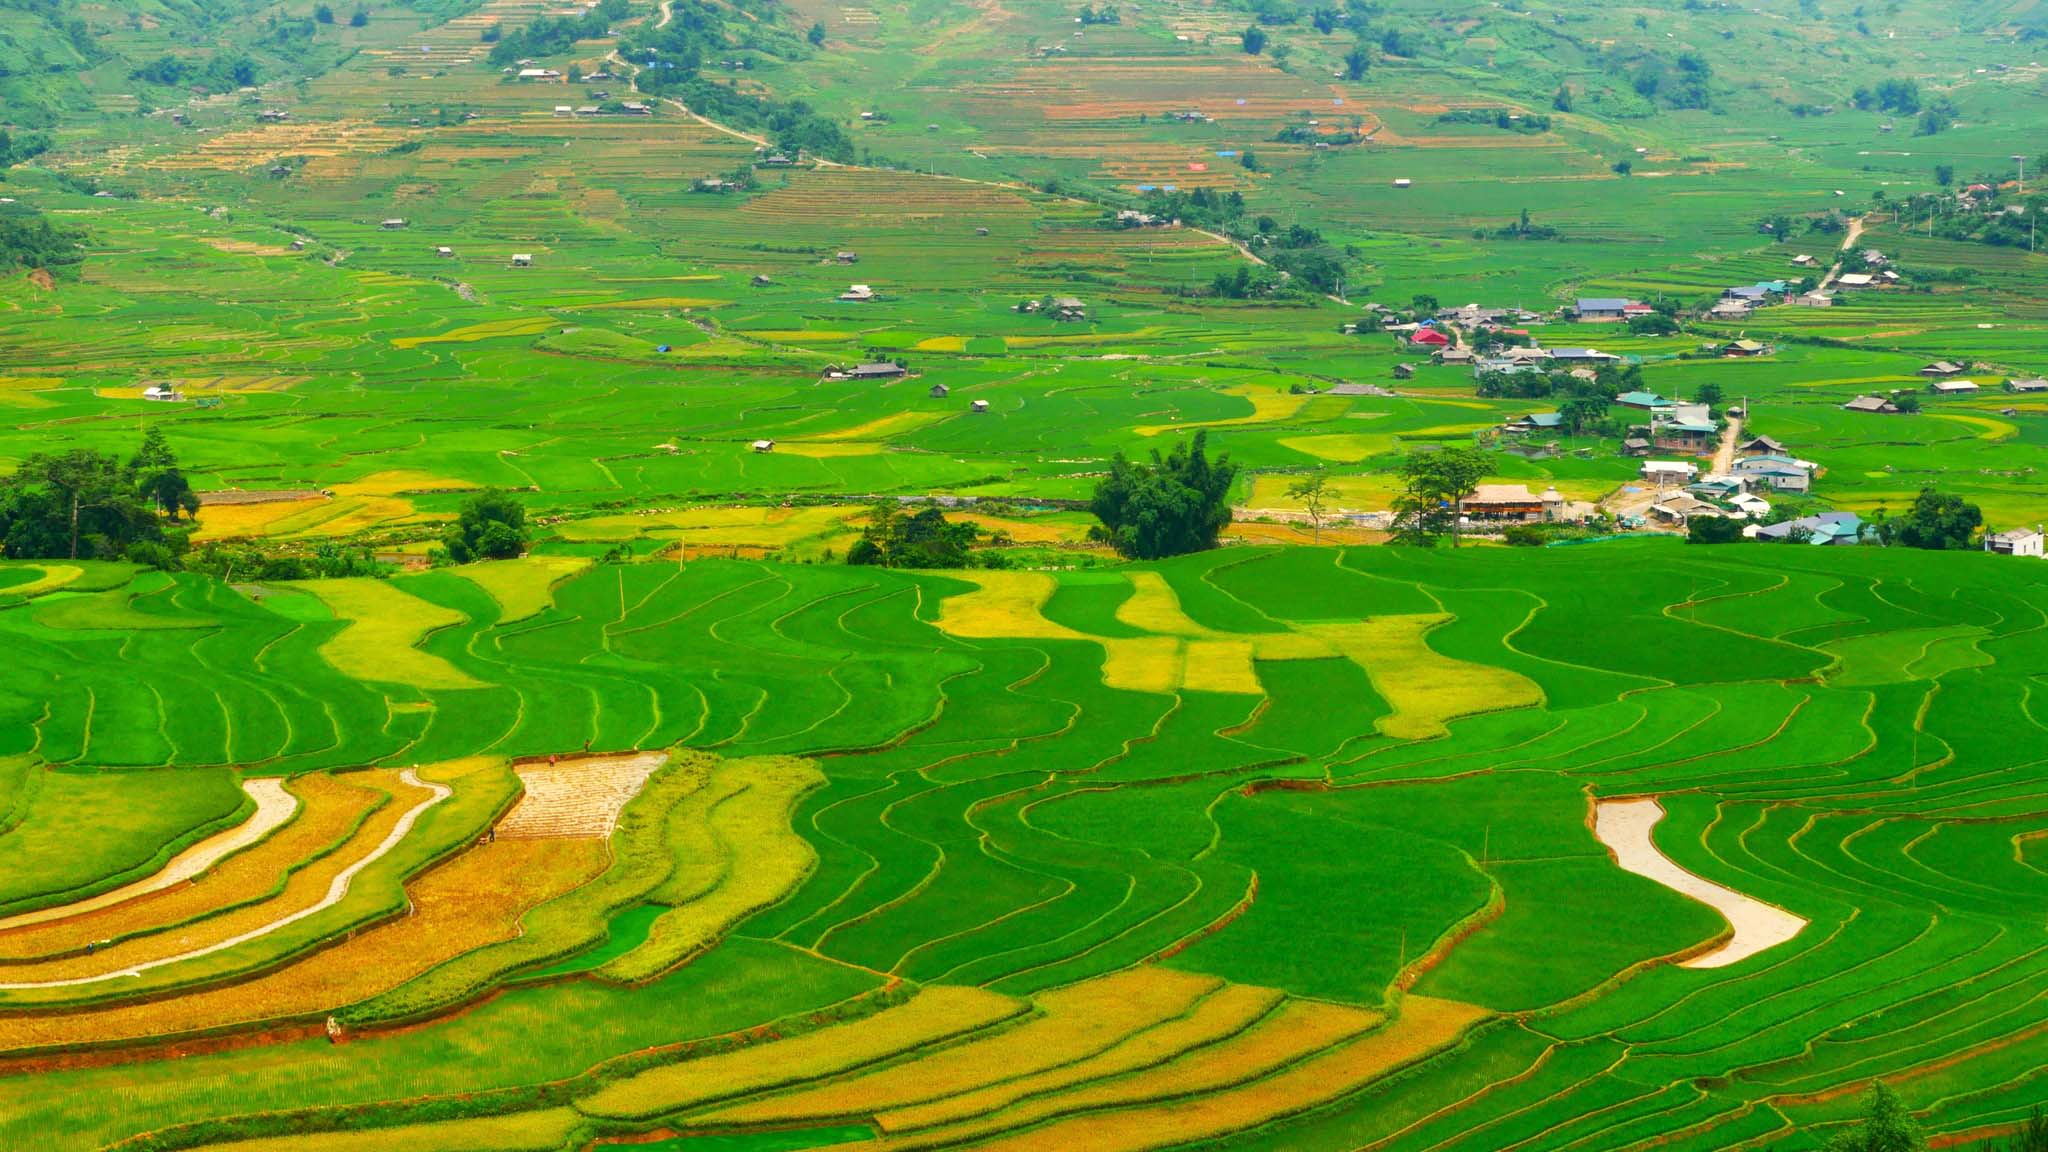 Việt Nam từ trên cao: ‘Hoa văn’ mùa đổ ải nơi rẻo cao phương Bắc